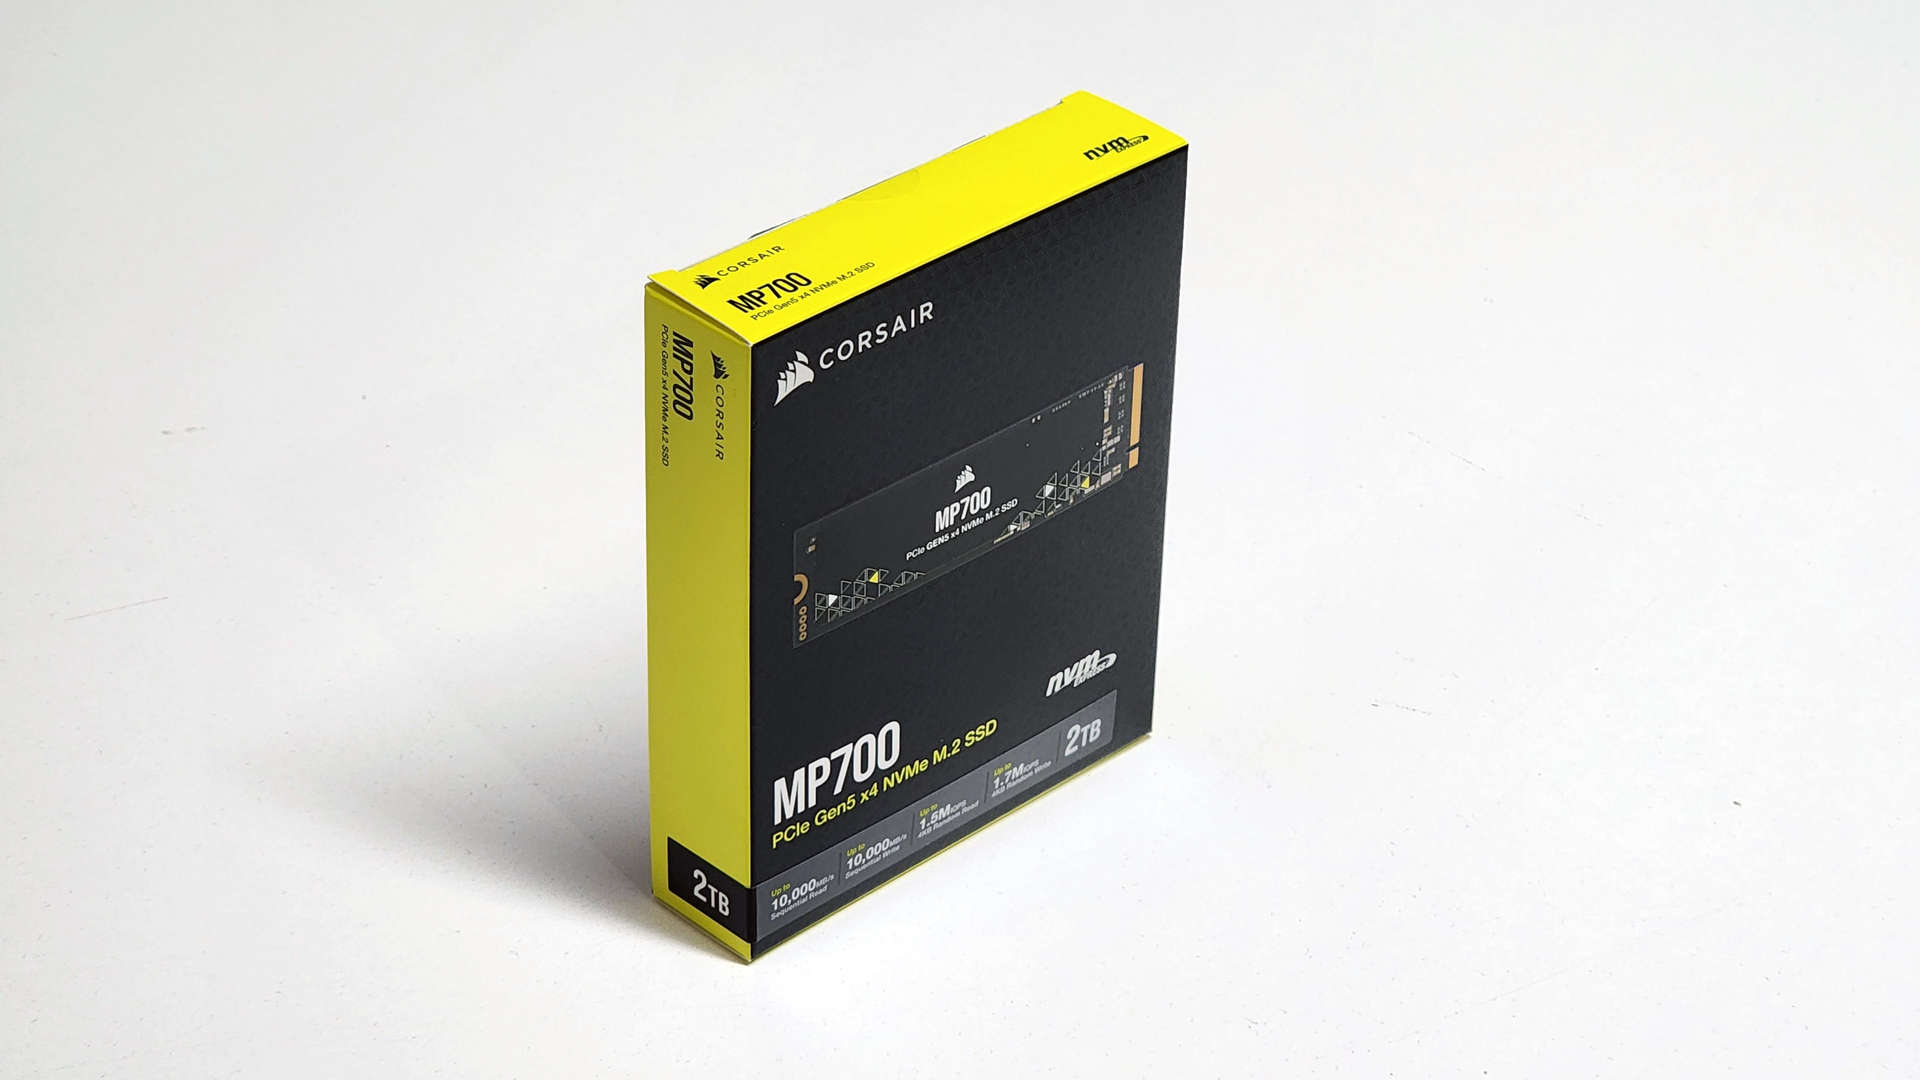 Corsair MP700 Pro 1 To SSD NVMe 2.0 M.2 PCIe Gen5 x4